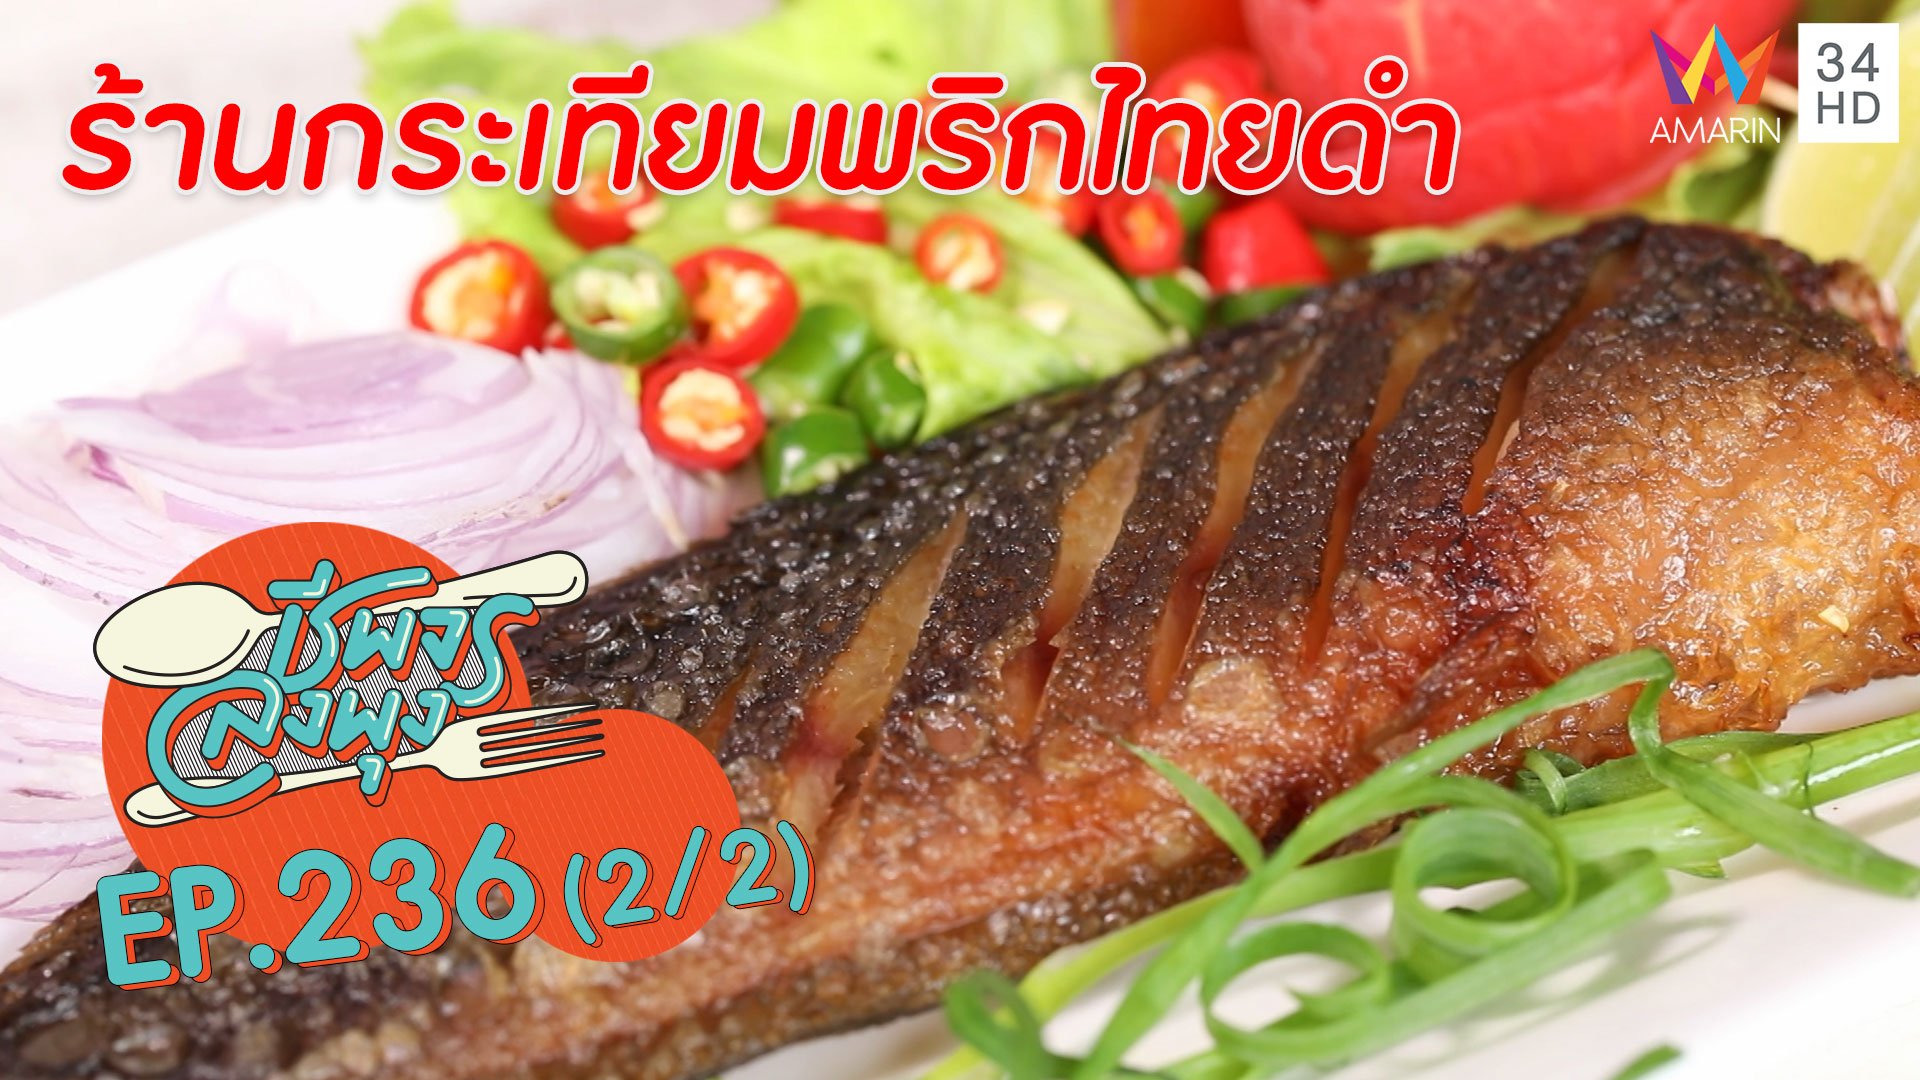 อาหารใต้รสเด็ด หรอยอย่างแรง!! @"ร้านกระเทียมพริกไทยดำ" | ชีพจรลงพุง | 12 ก.ย. 63 (2/2) | AMARIN TVHD34